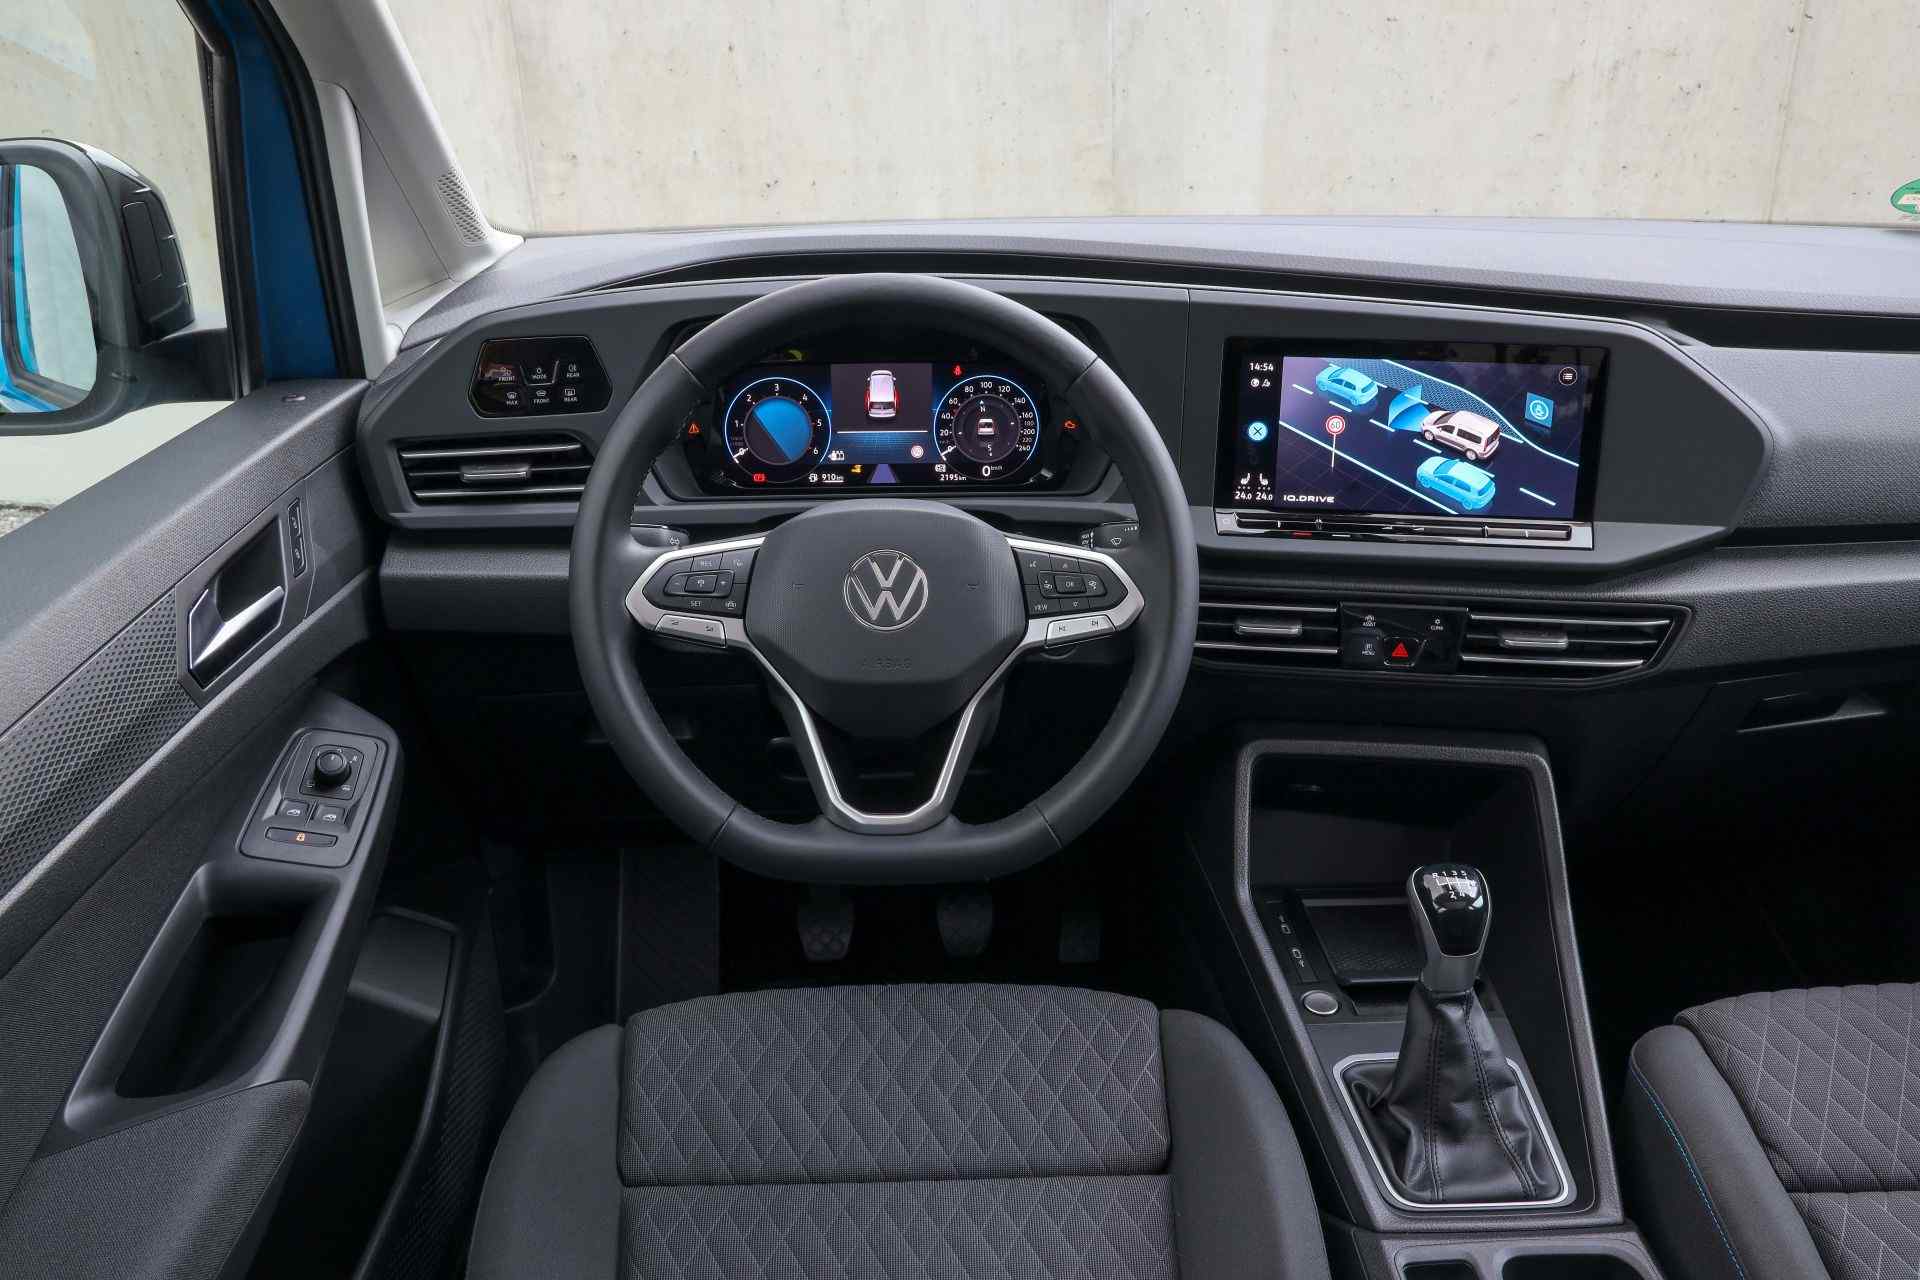 2021 Volkswagen Caddy: Yeni Caddy'nin Fiyatı Açıklandı